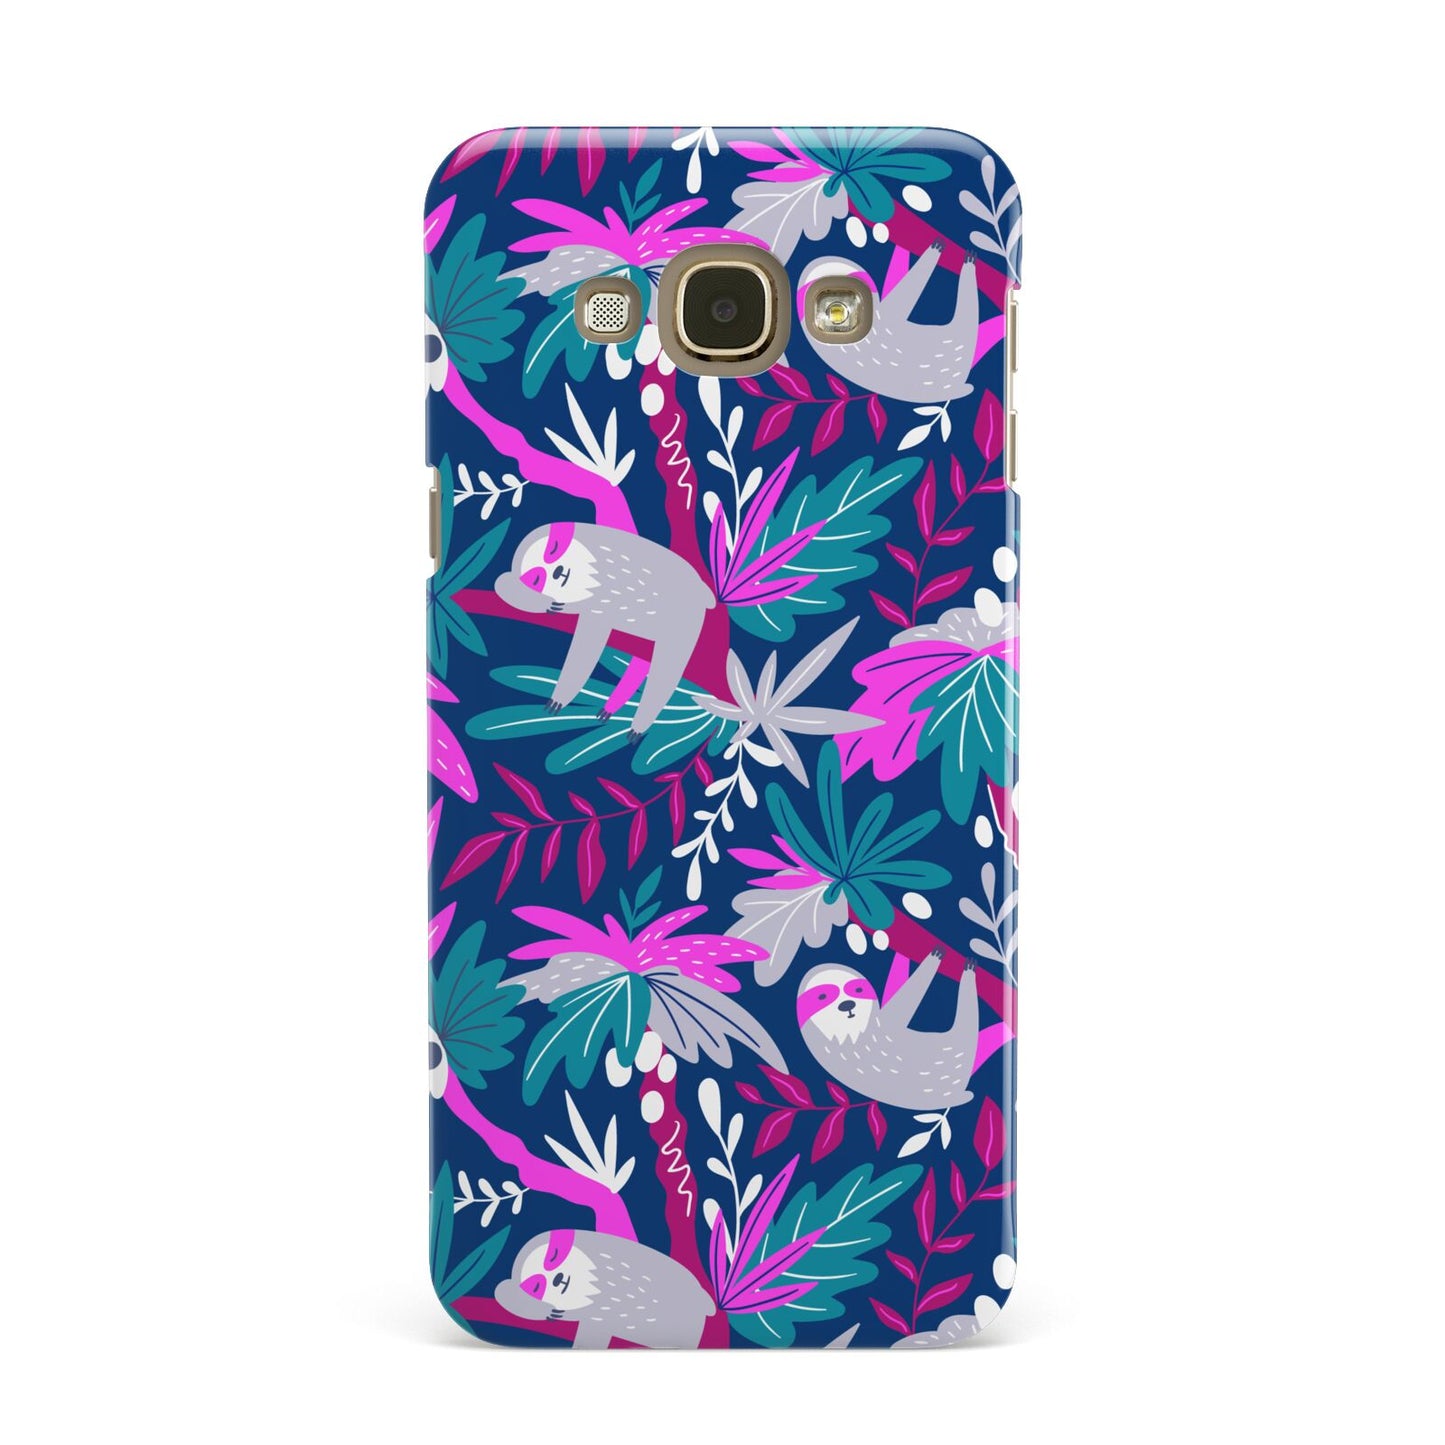 Sloth Samsung Galaxy A8 Case